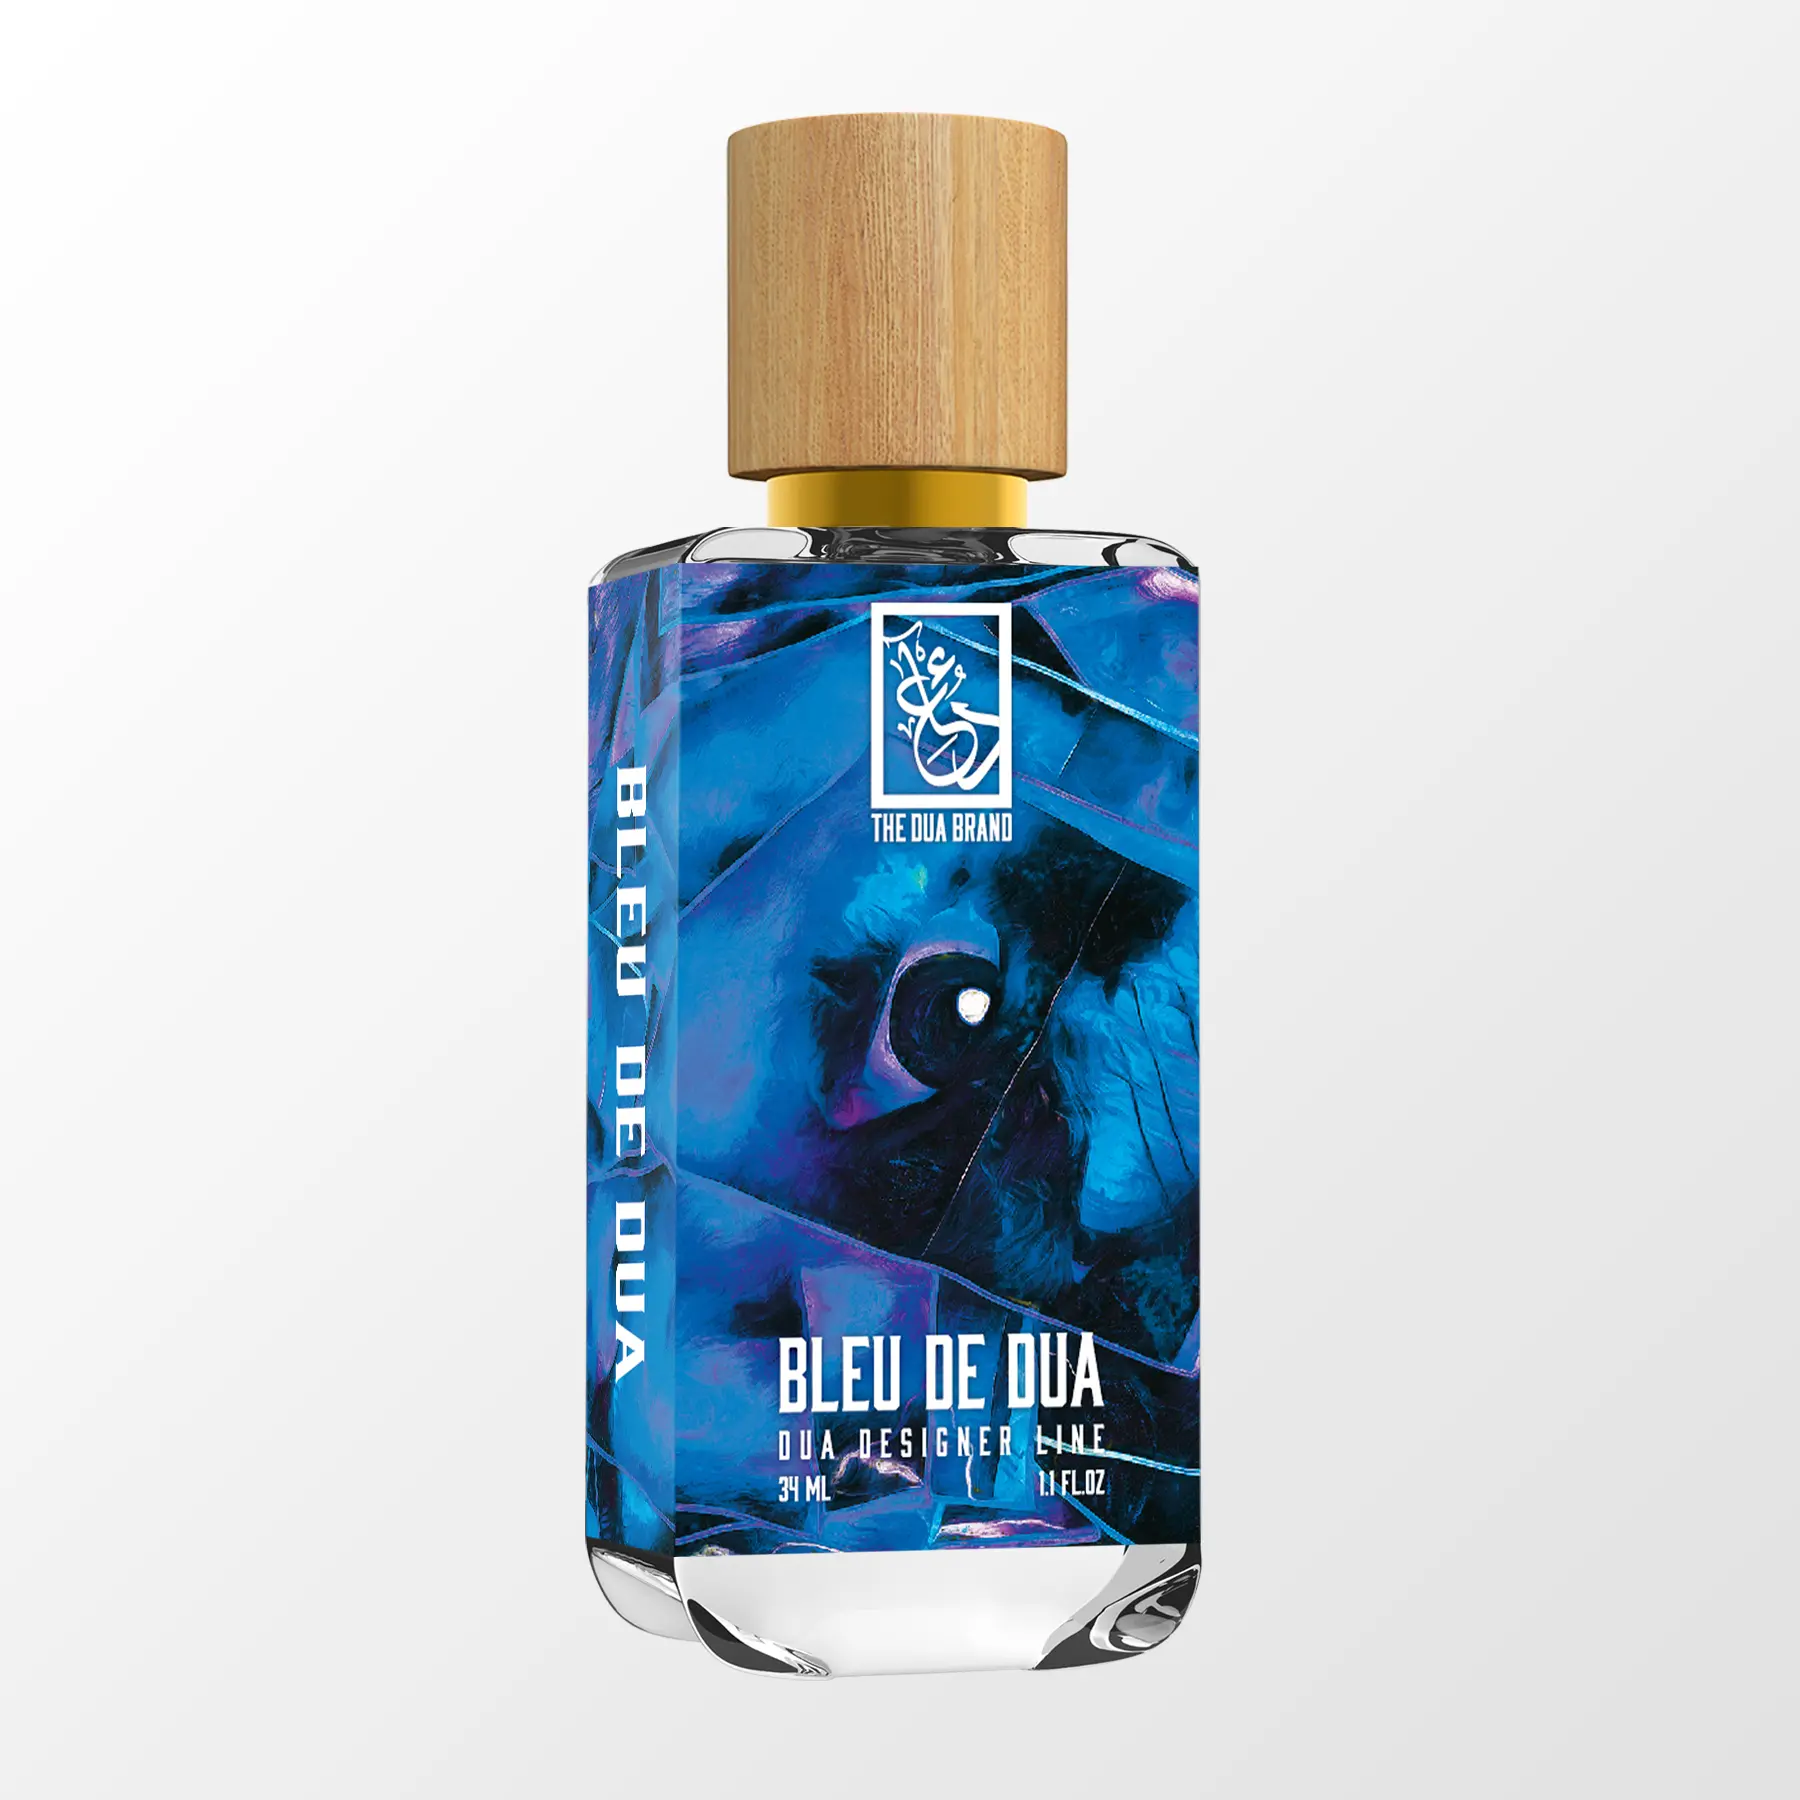 bleu de chanel eau de parfum spray, 5 oz